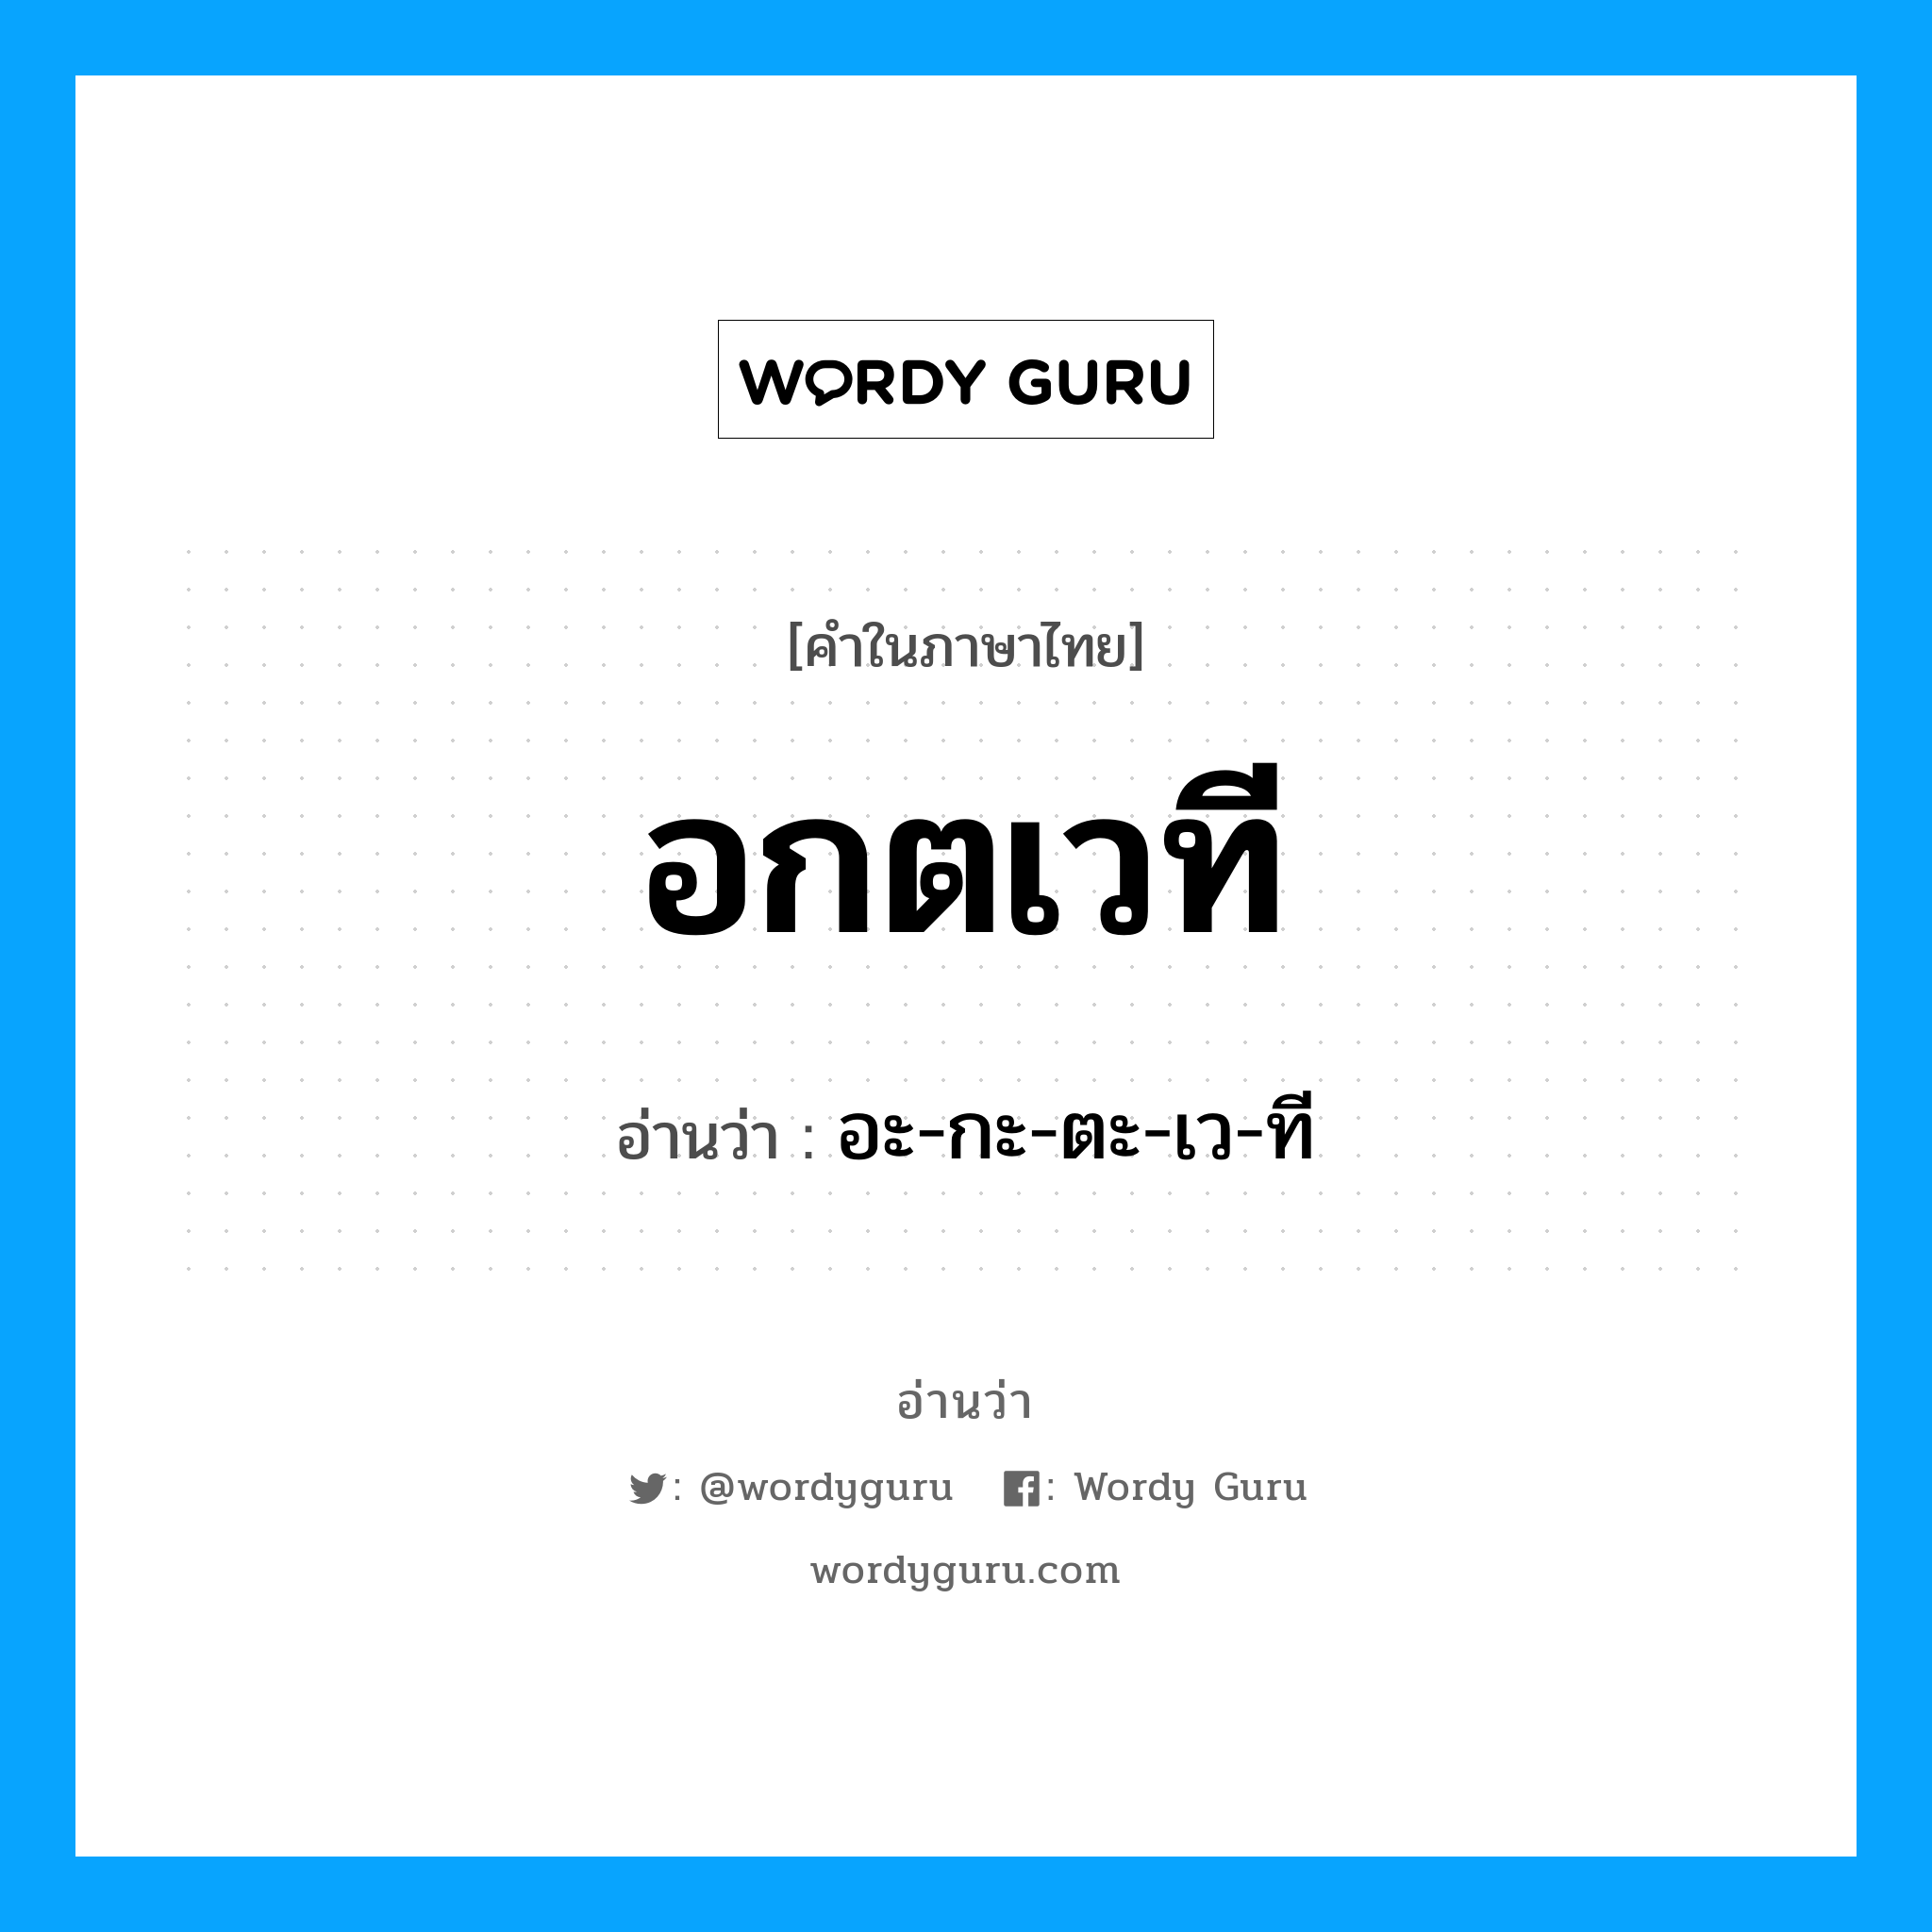 อะ-กะ-ตะ-เว-ที เป็นคำอ่านของคำไหน?, คำในภาษาไทย อะ-กะ-ตะ-เว-ที อ่านว่า อกตเวที